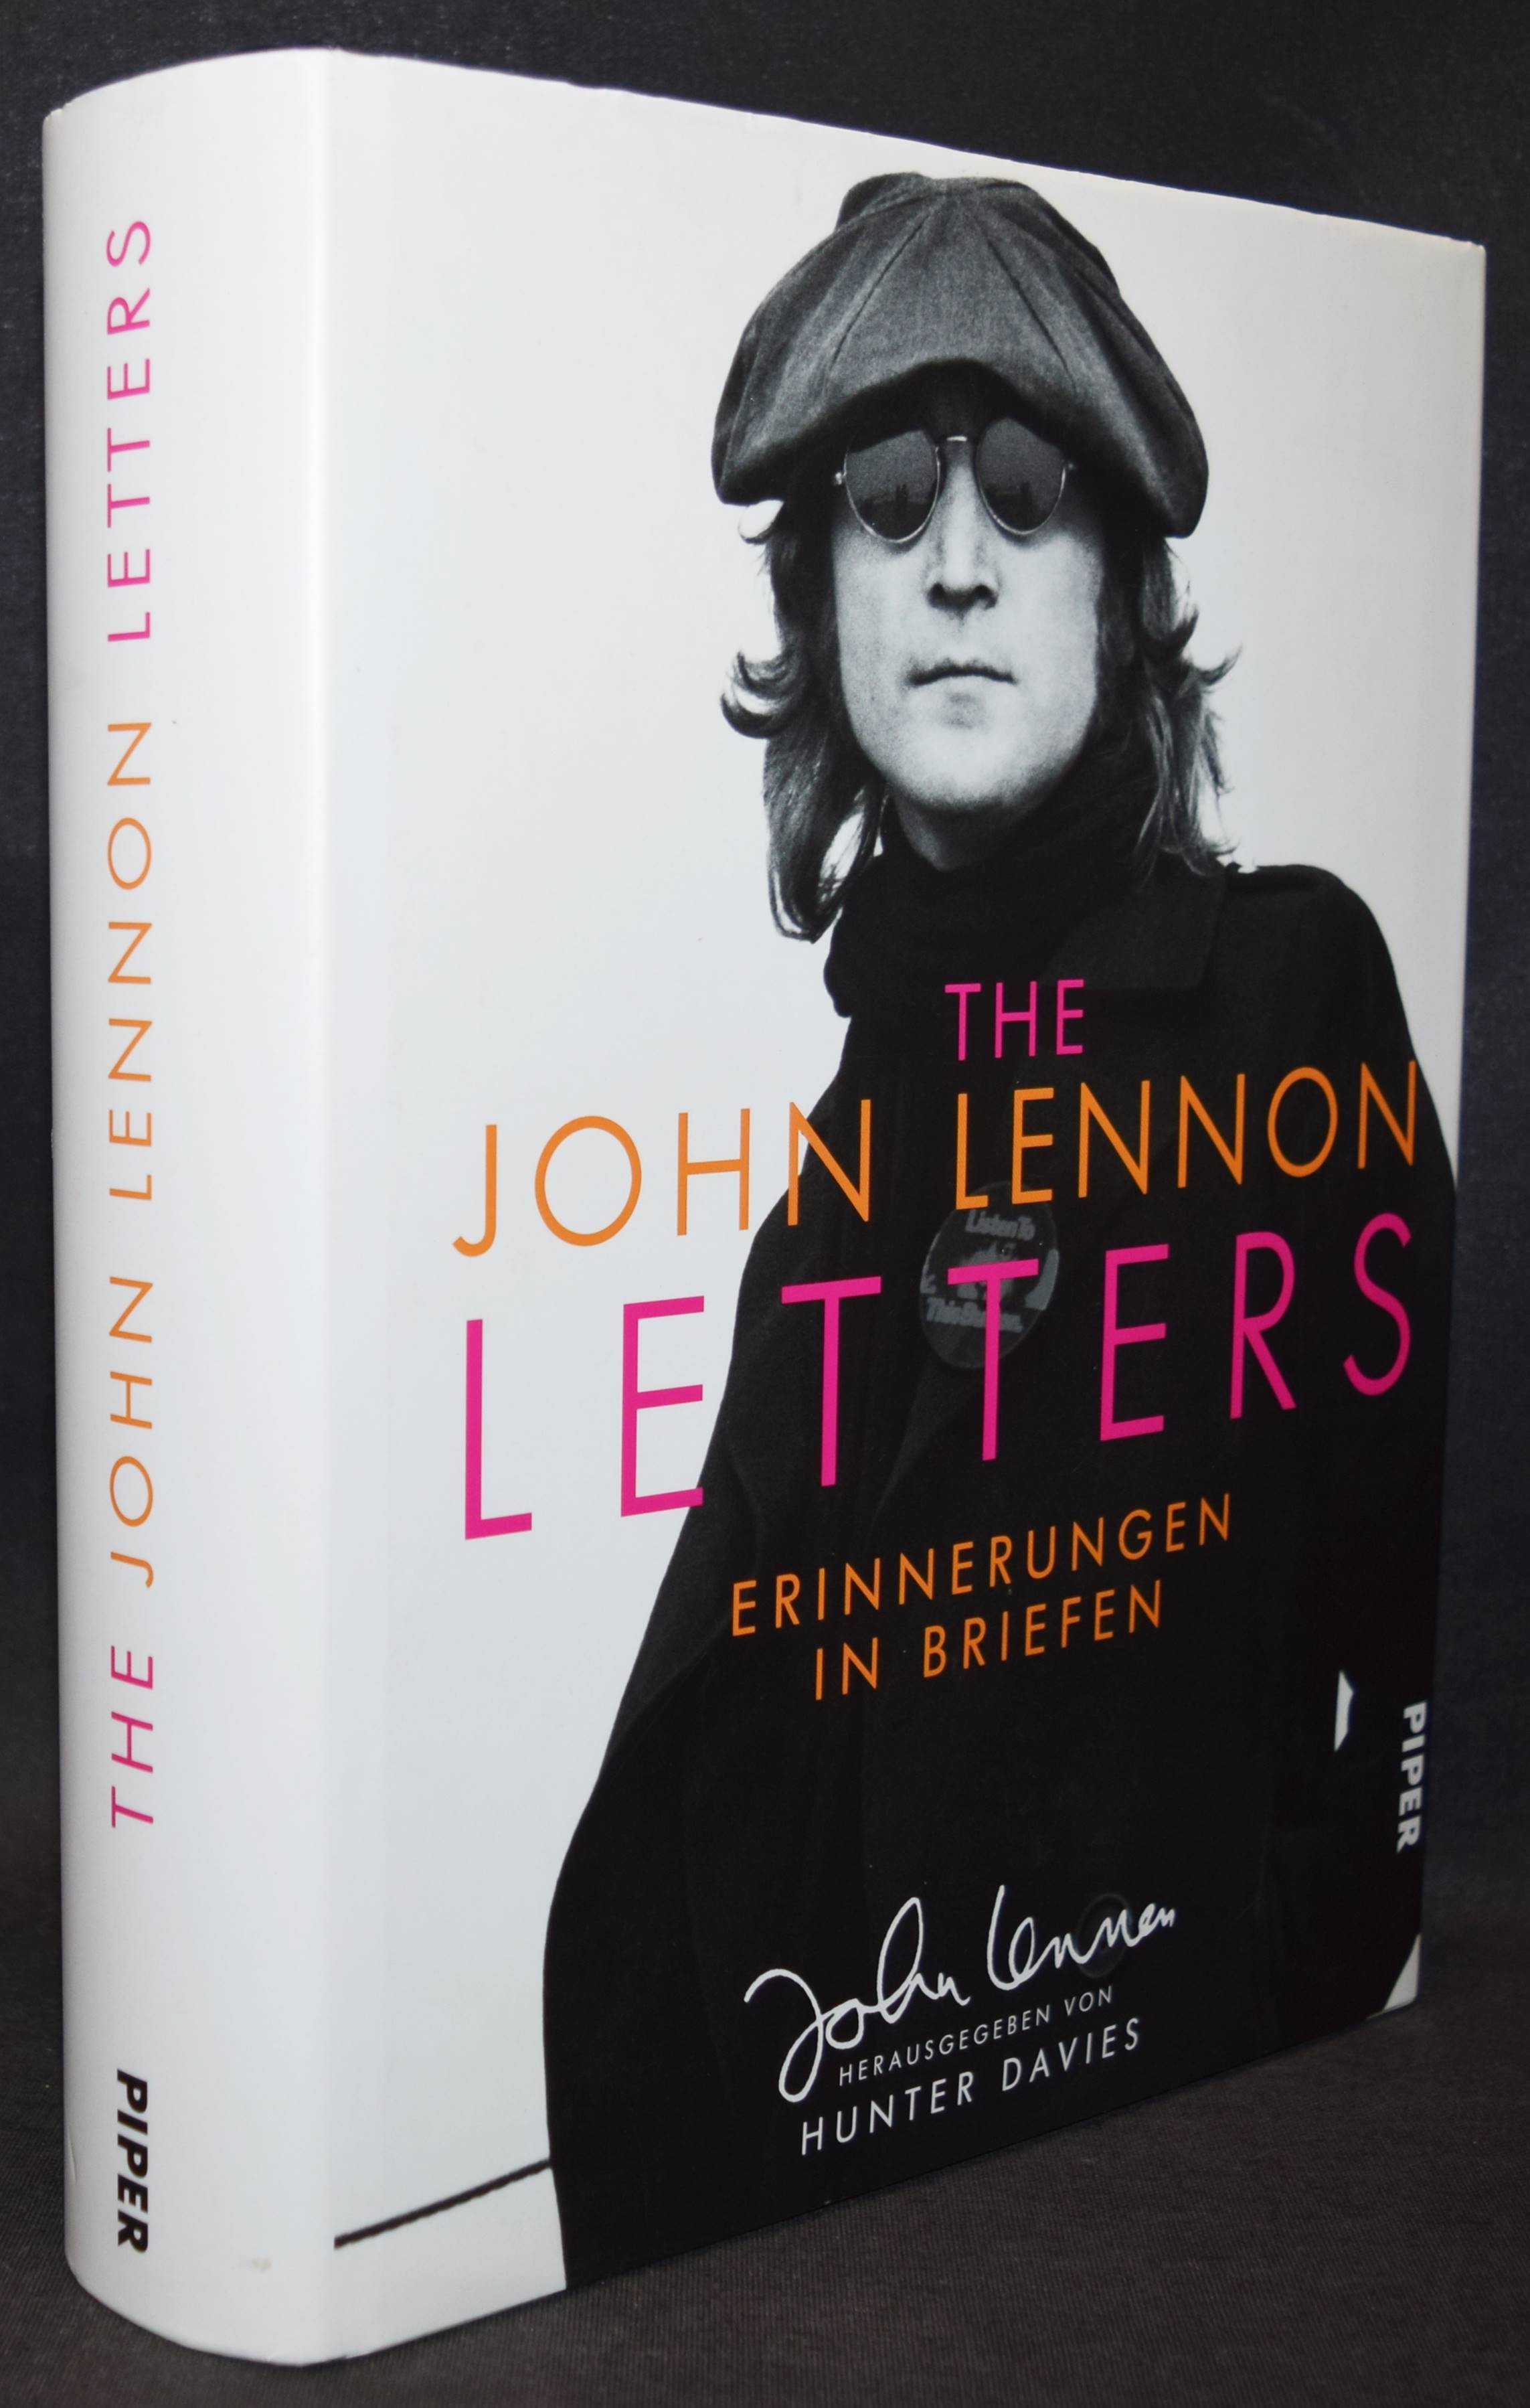 The John Lennon letters. Erinnerungen in Briefen. Aus dem Englischen von Helmut Dierlamm und Werner Roller. - Beatles - Lennon - Davies, Hunter (Hrsg.).